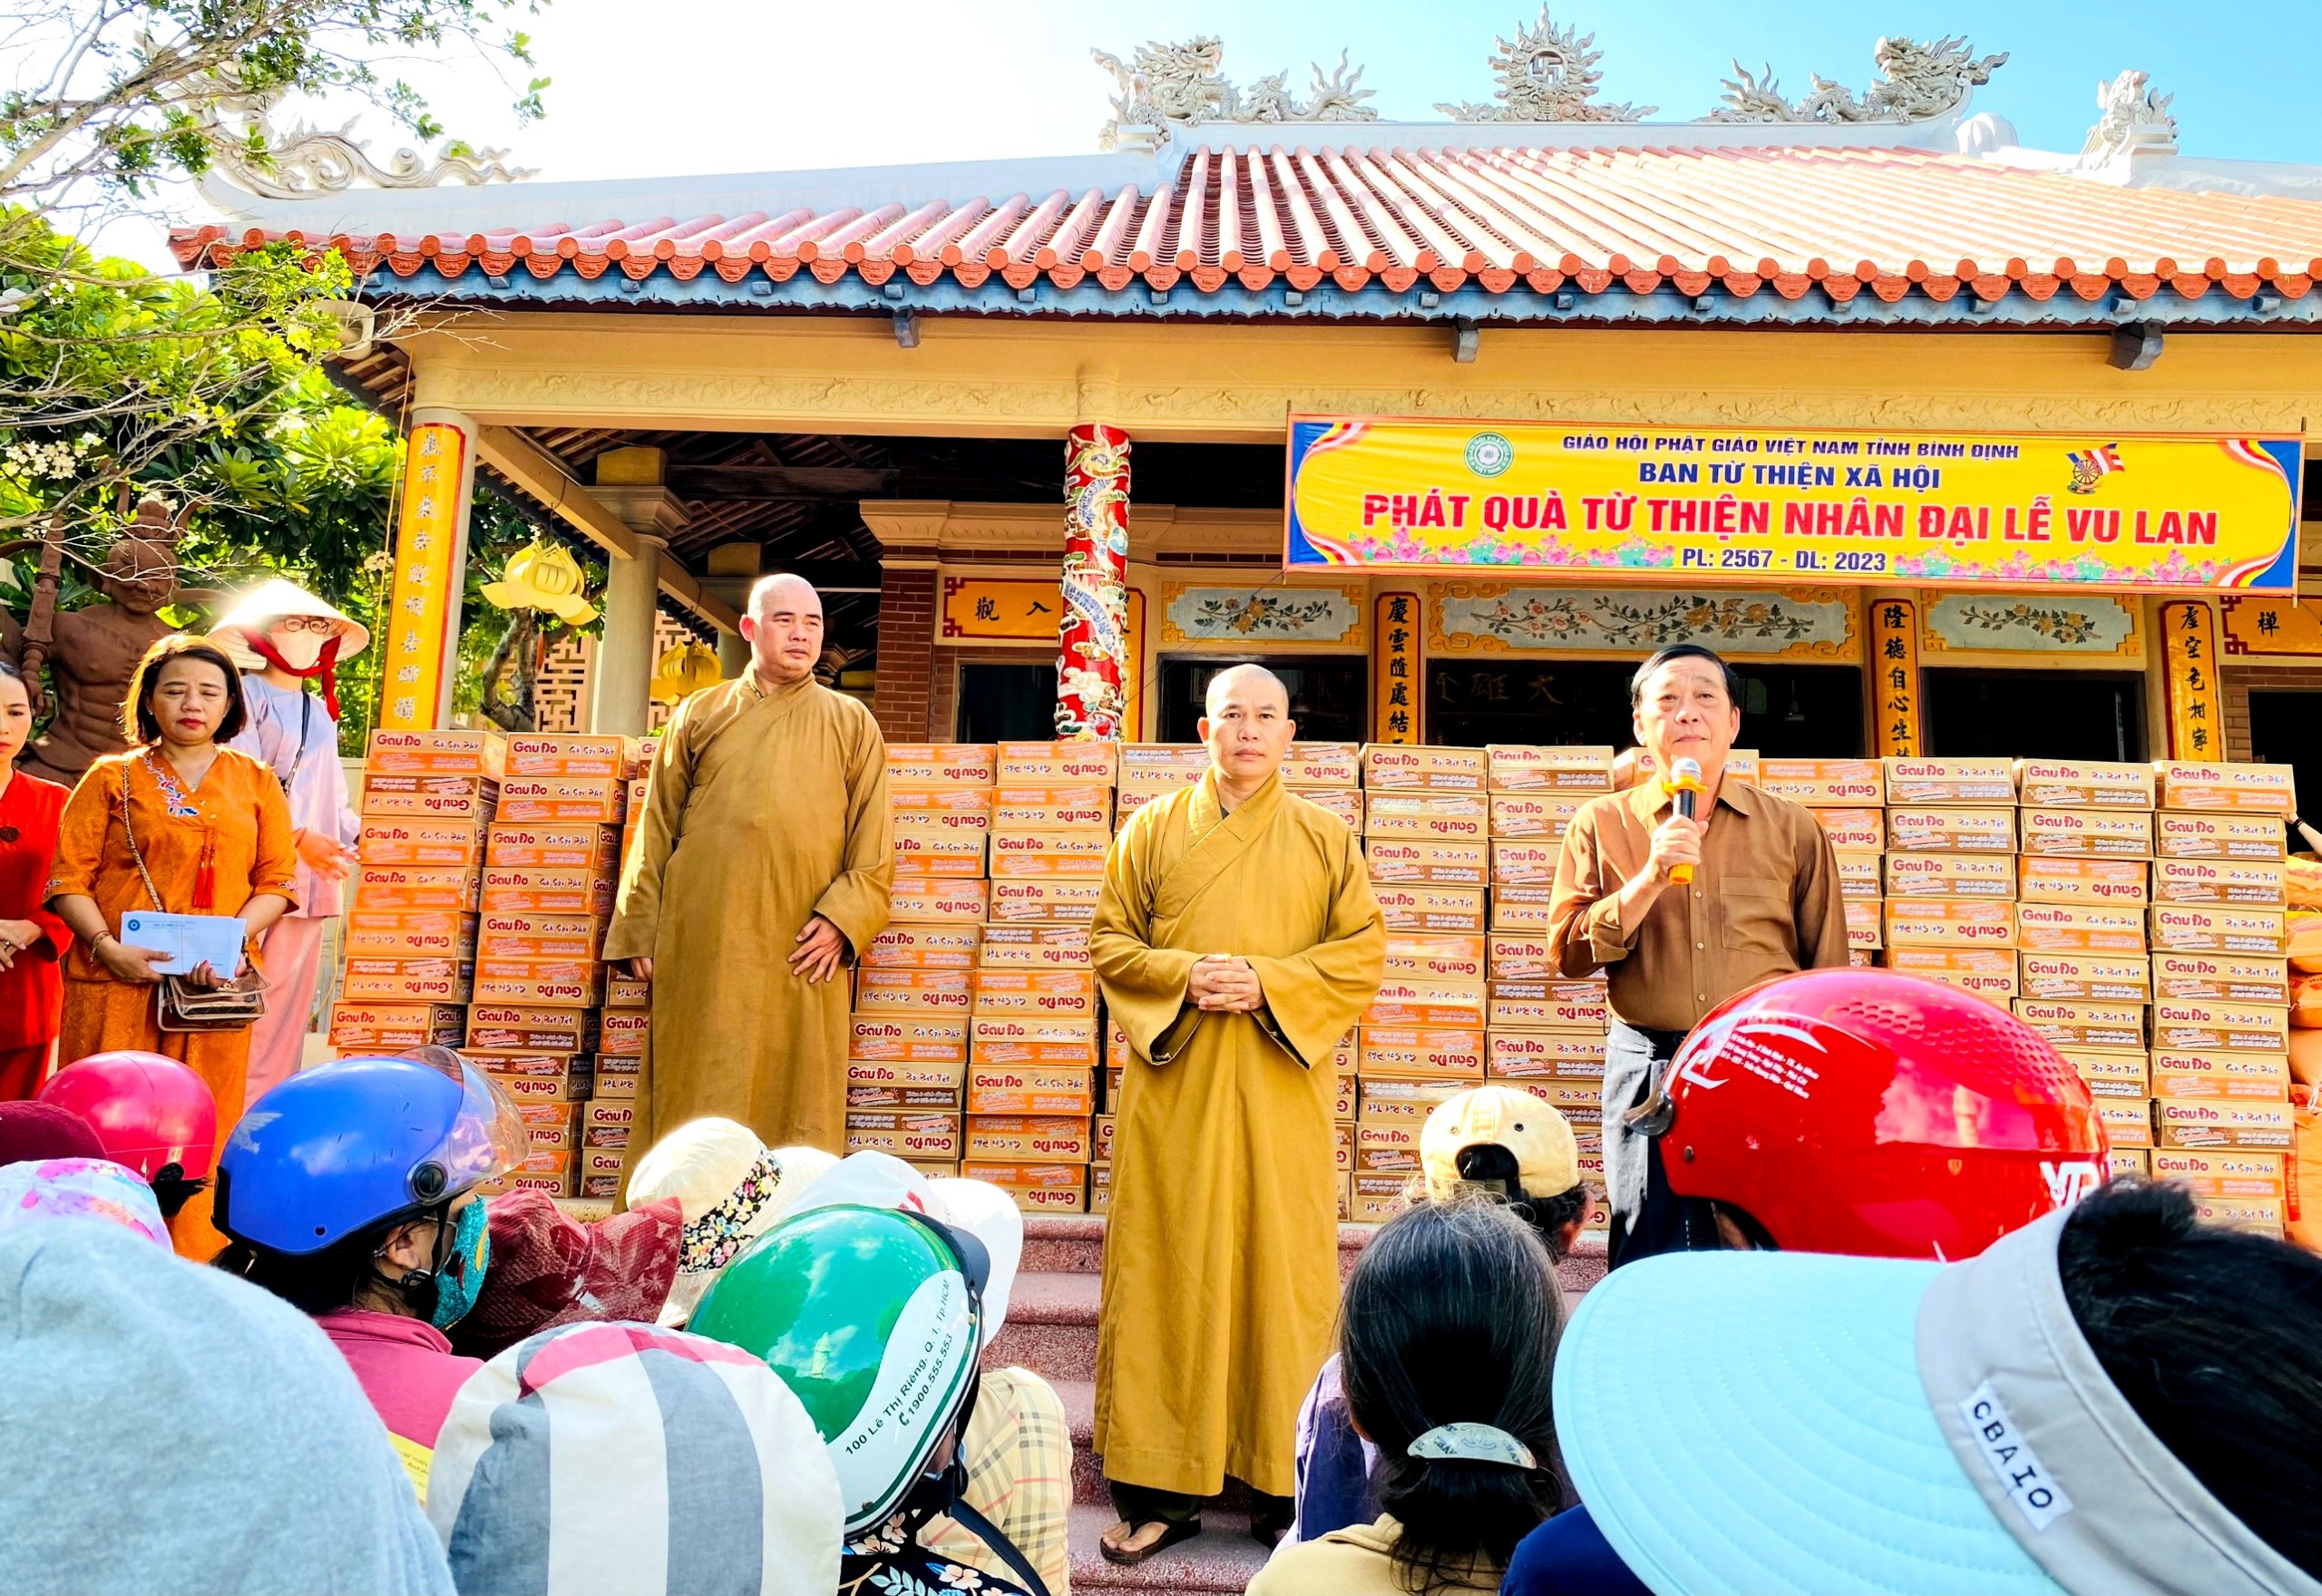 Ban Từ thiện xã hội Phật giáo tỉnh phát quà trong mùa Vu lan PL. 2567 – 2023.